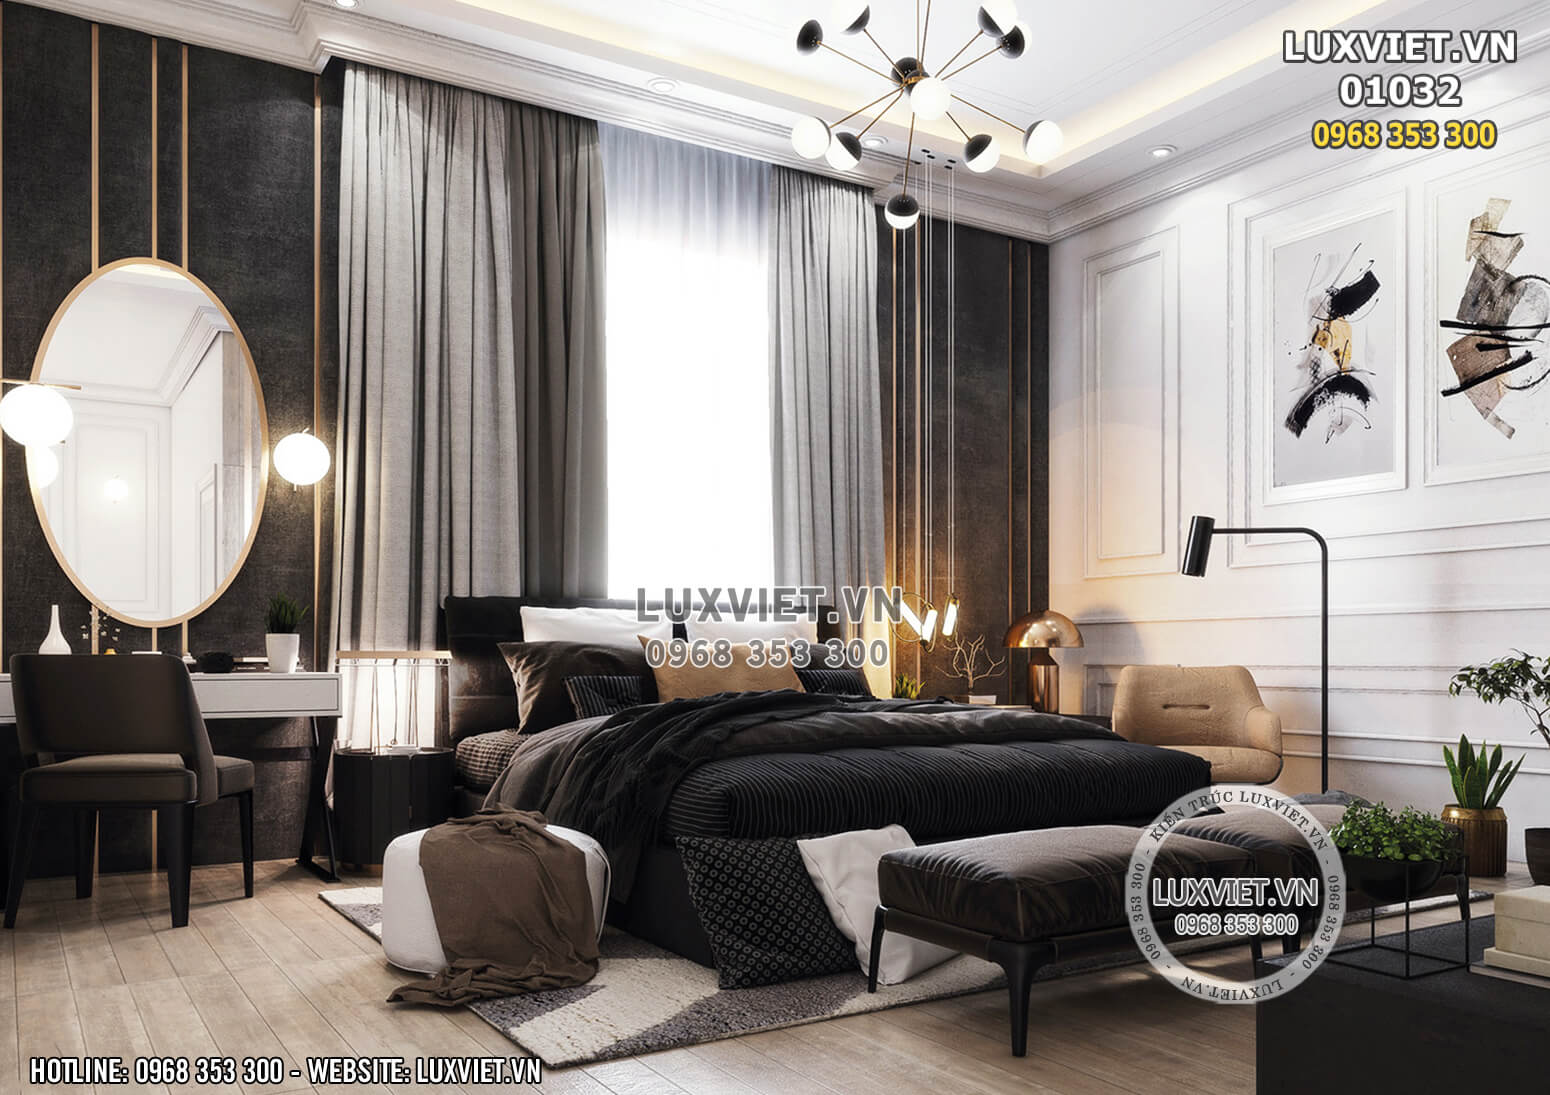 Hình ảnh: Toàn cảnh phòng ngủ master thiết kế luxury - LV 01032